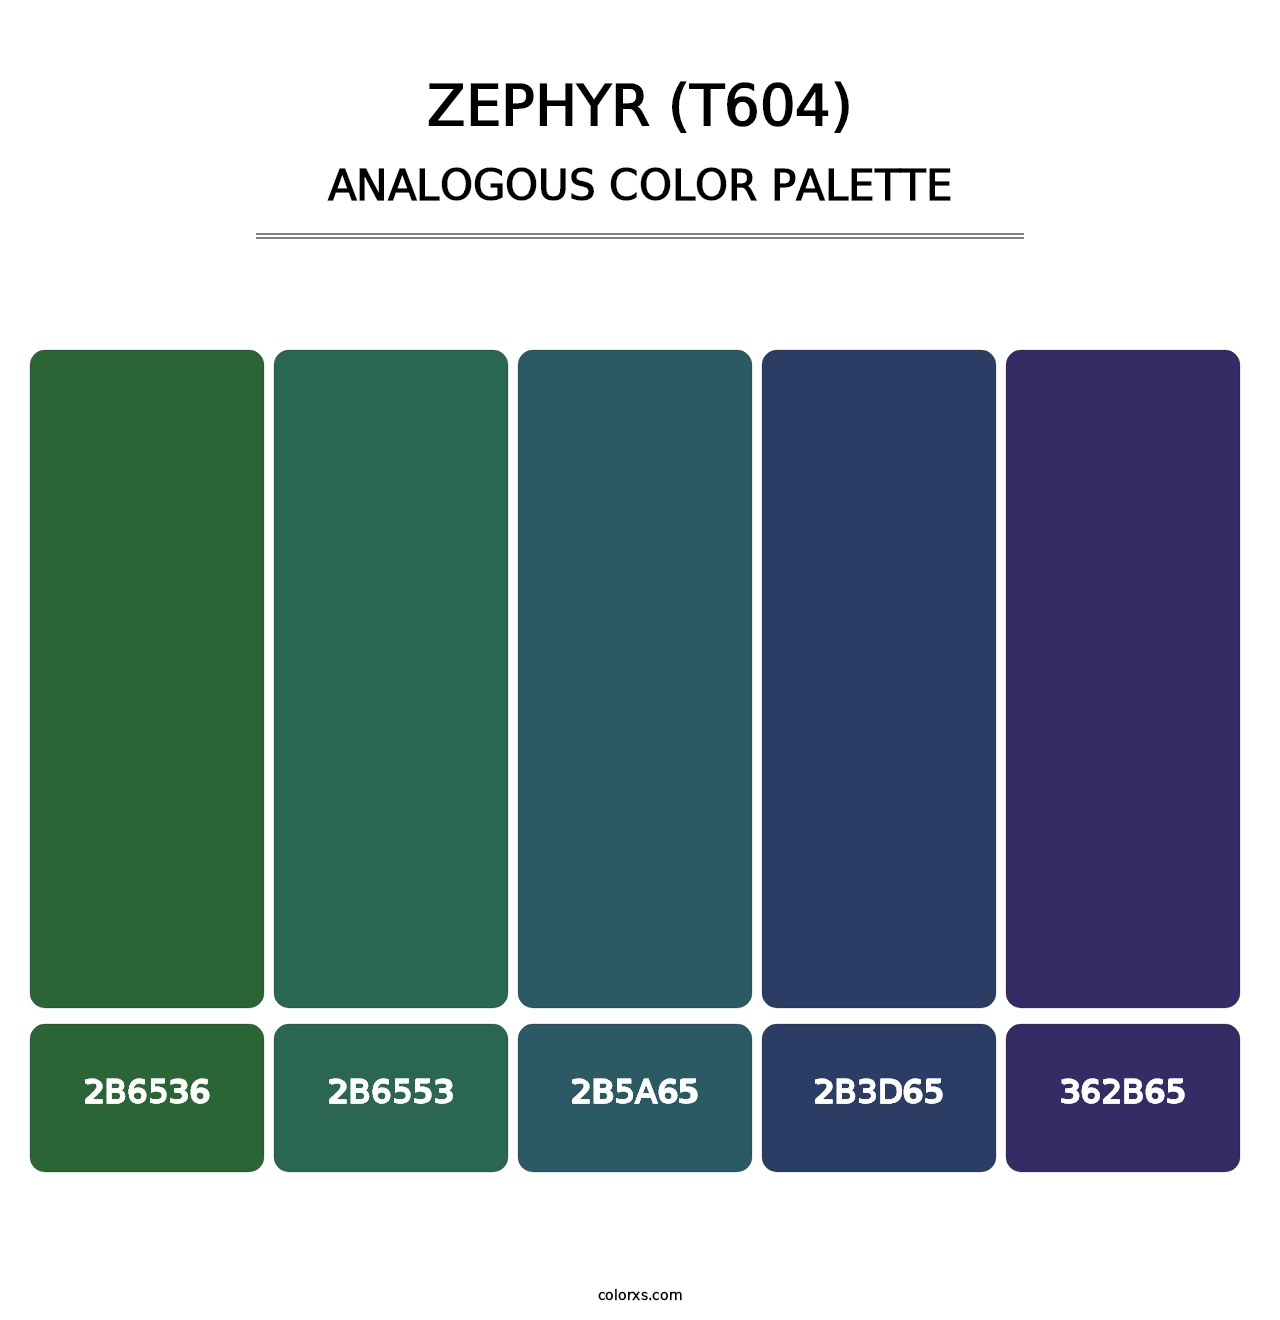 Zephyr (T604) - Analogous Color Palette